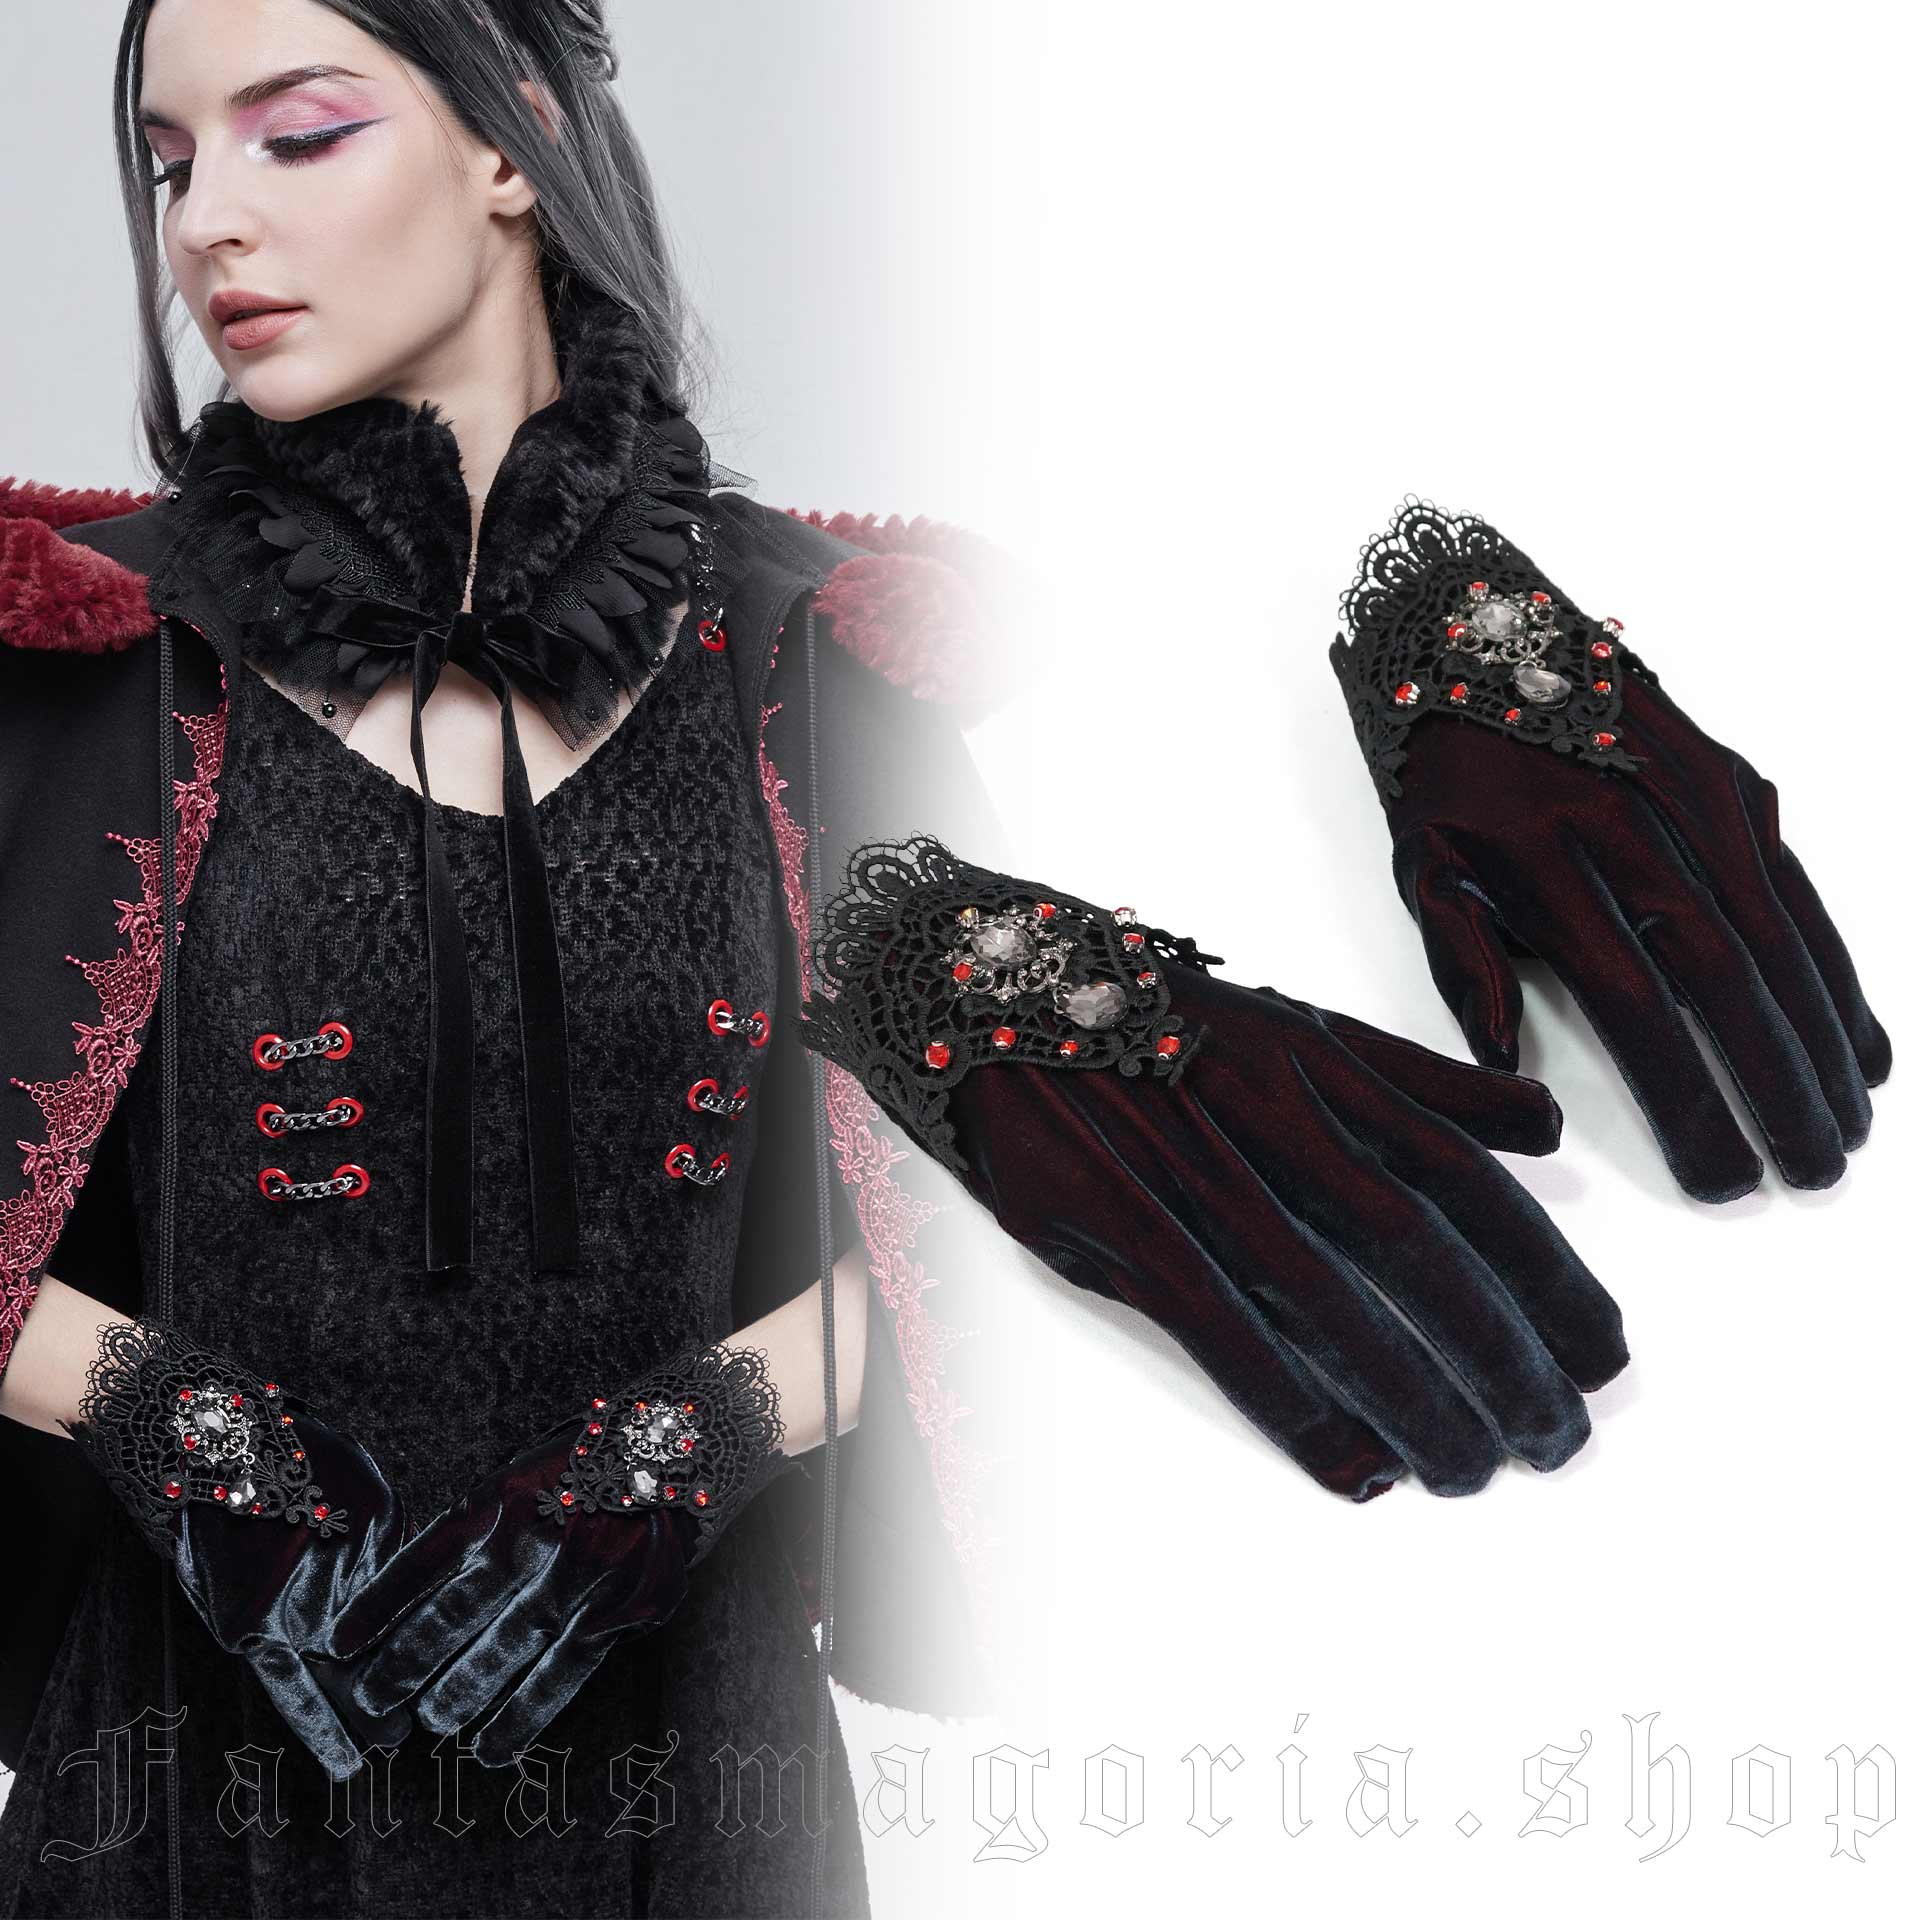 Elegant Velvet Evening Gloves GOTHIC VAMPIRE Victorian 